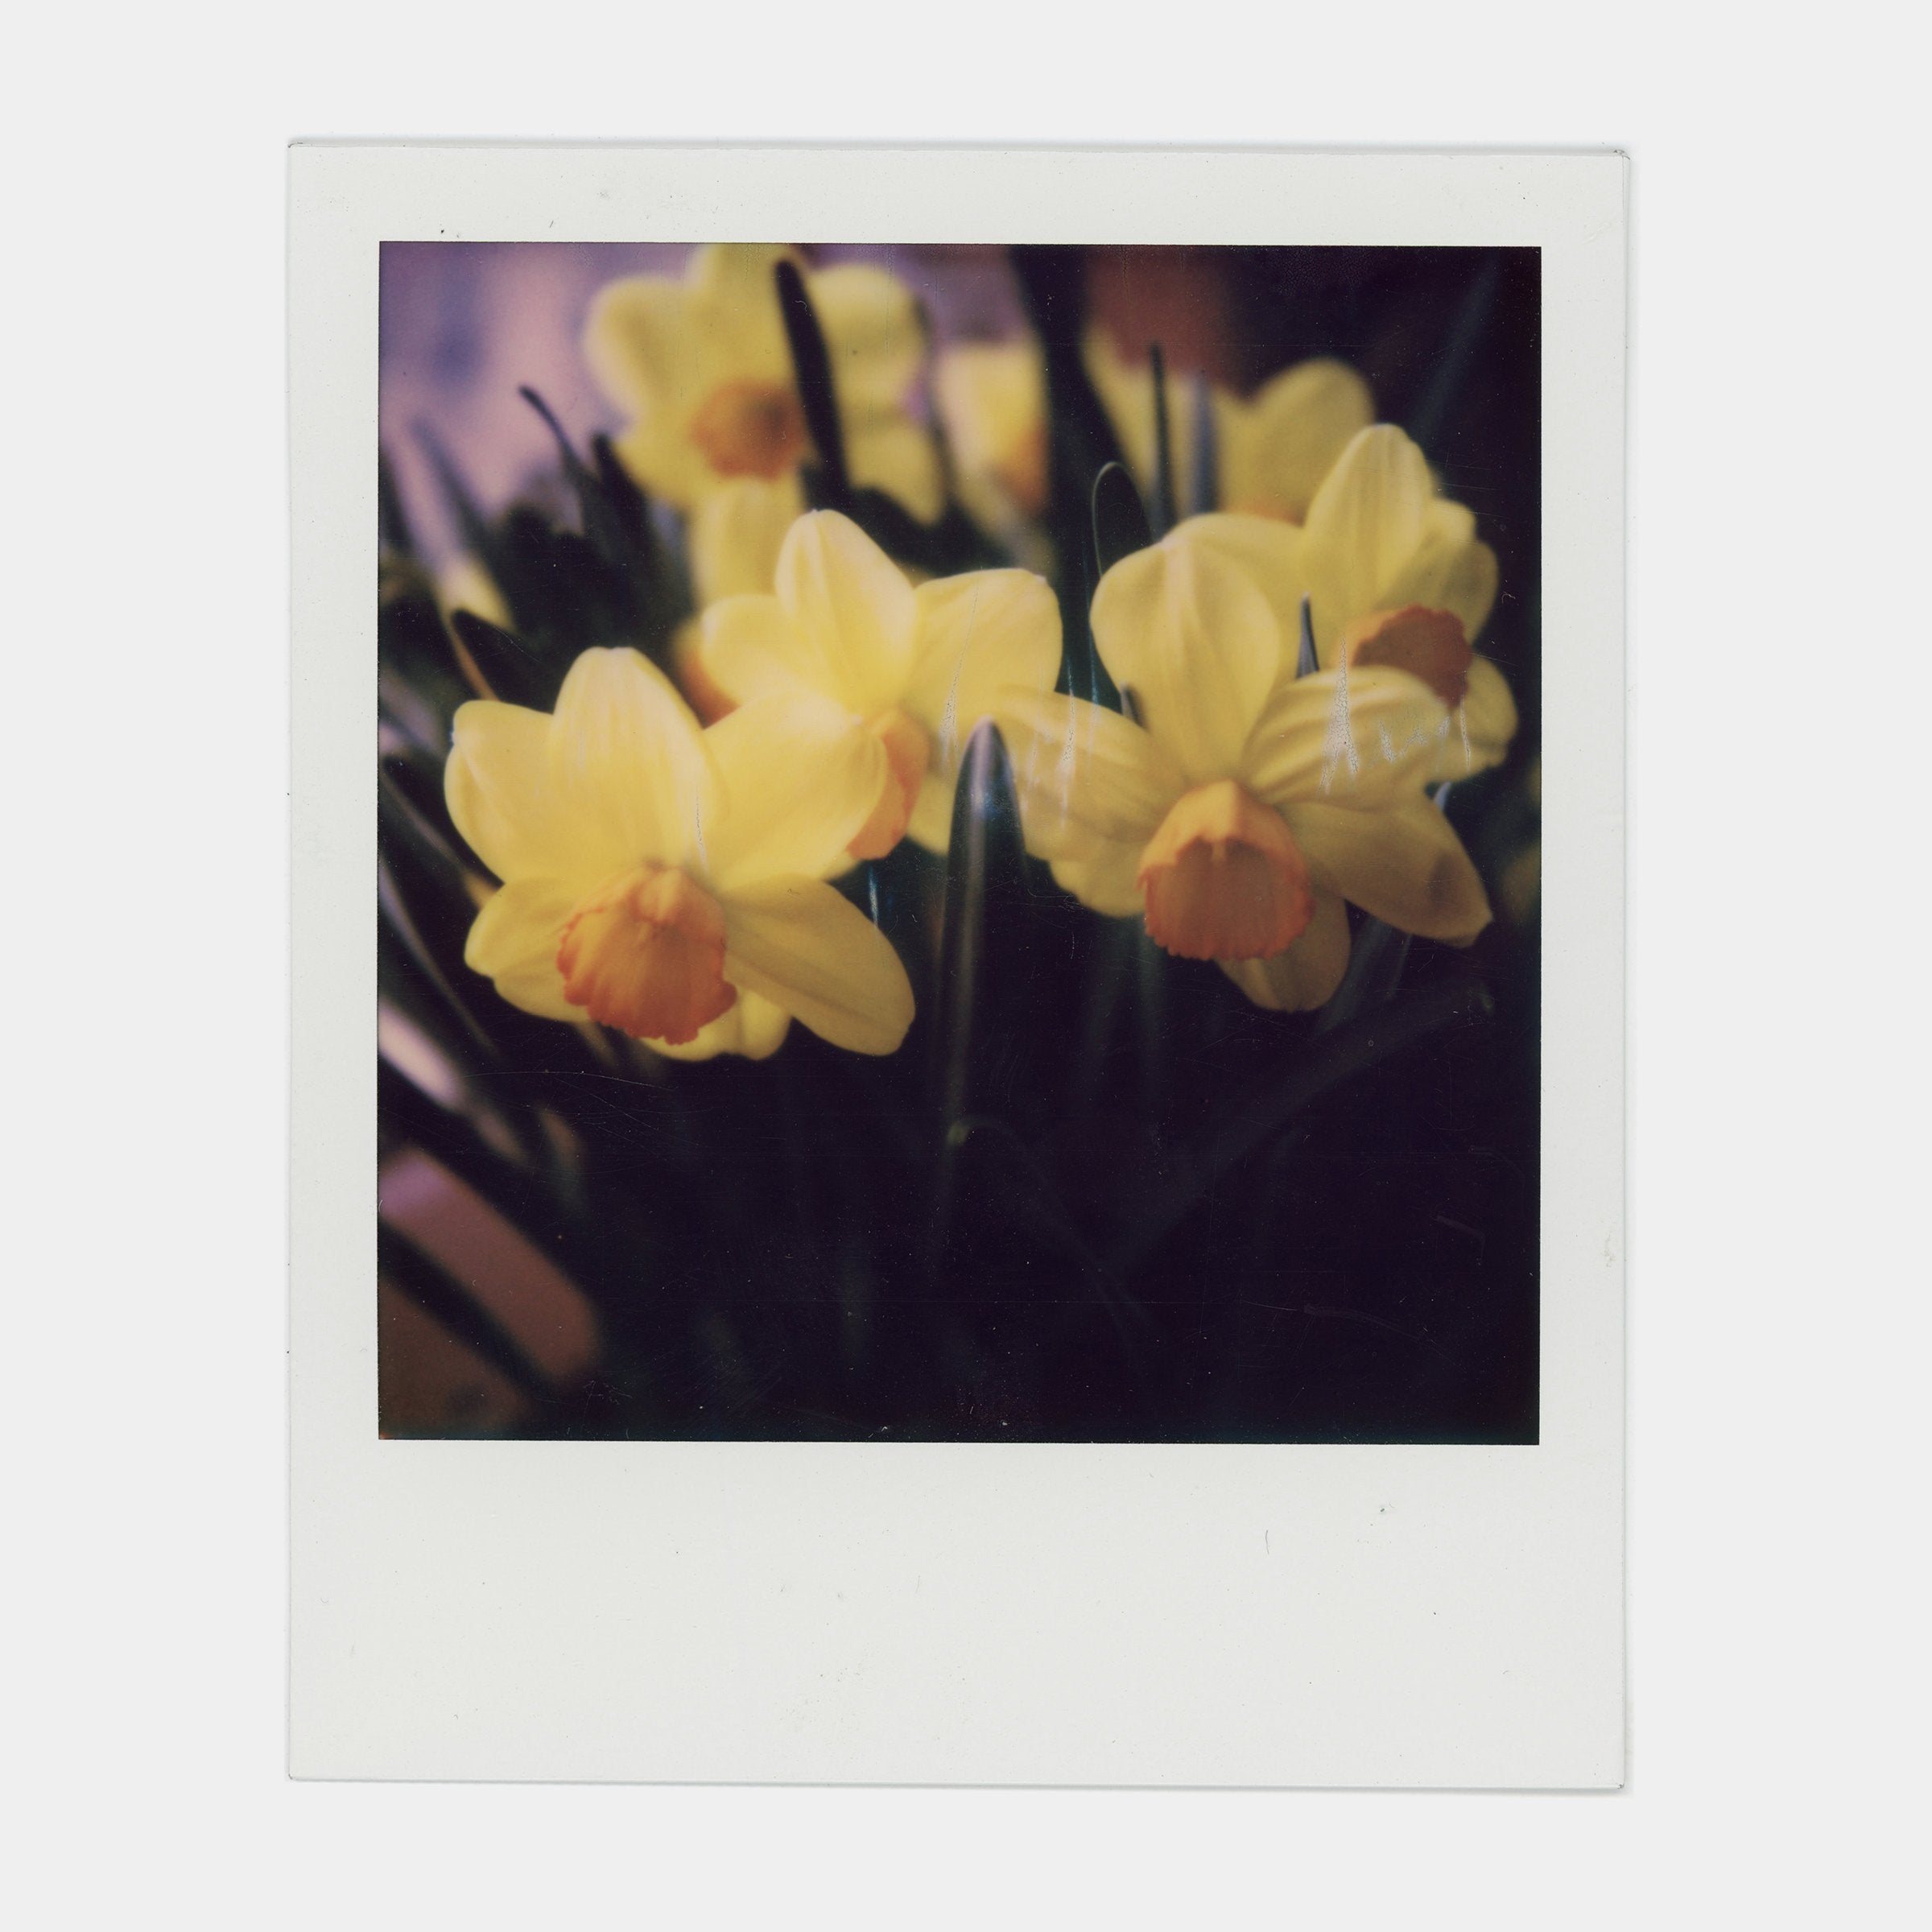 Polaroid 600 Color Instant Film (3 Pack)